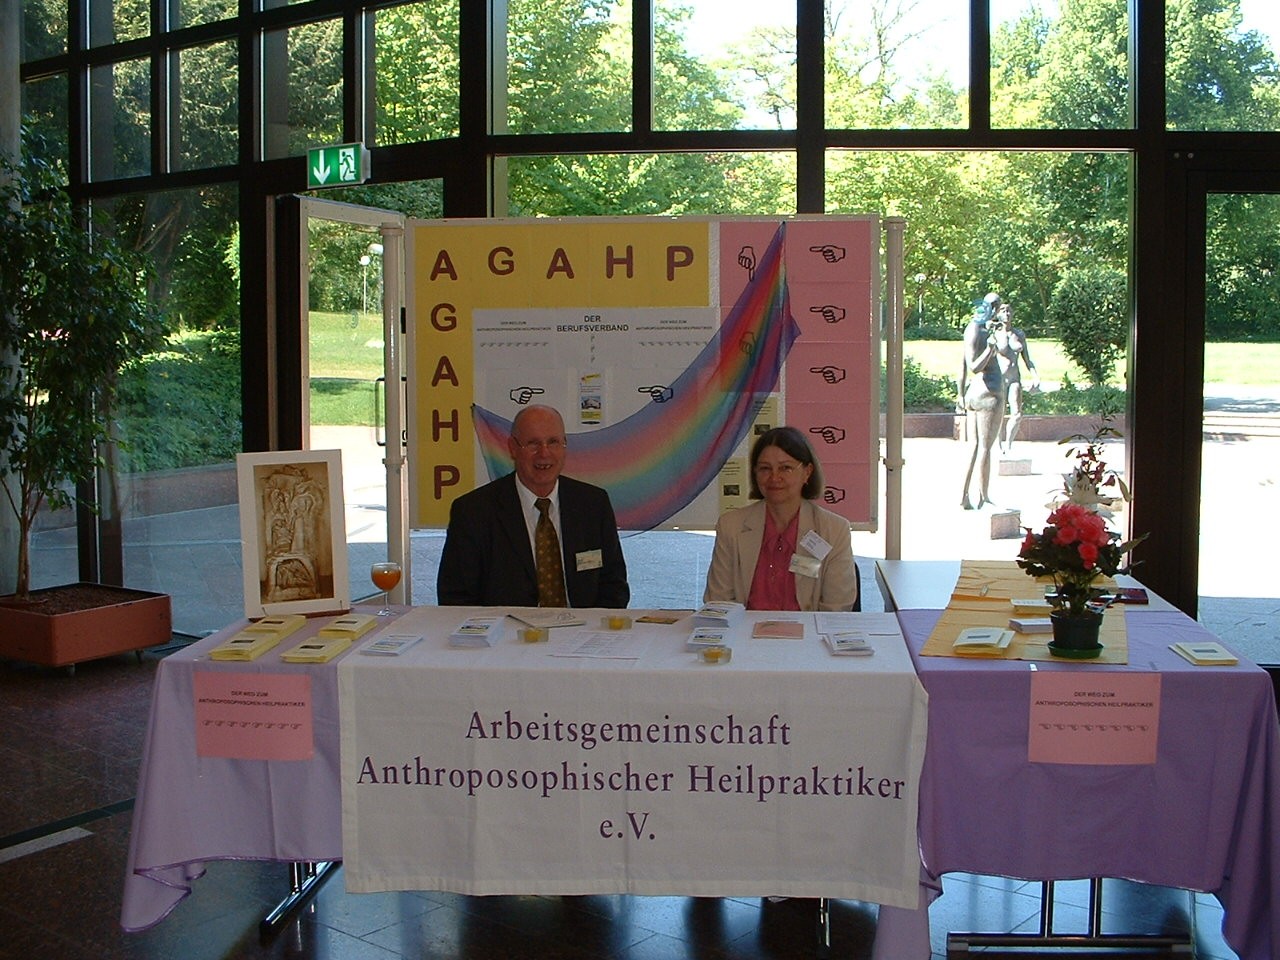 Öffnung nach außen - Öffentlichkeitsarbeit als Aufgabe In der Zeit von Werner Schmötzer als geschäftsführendem Vorsitzenden der AGAHP war durch die Vortragsreisen von ihm im Auftrag der WELEDA auch